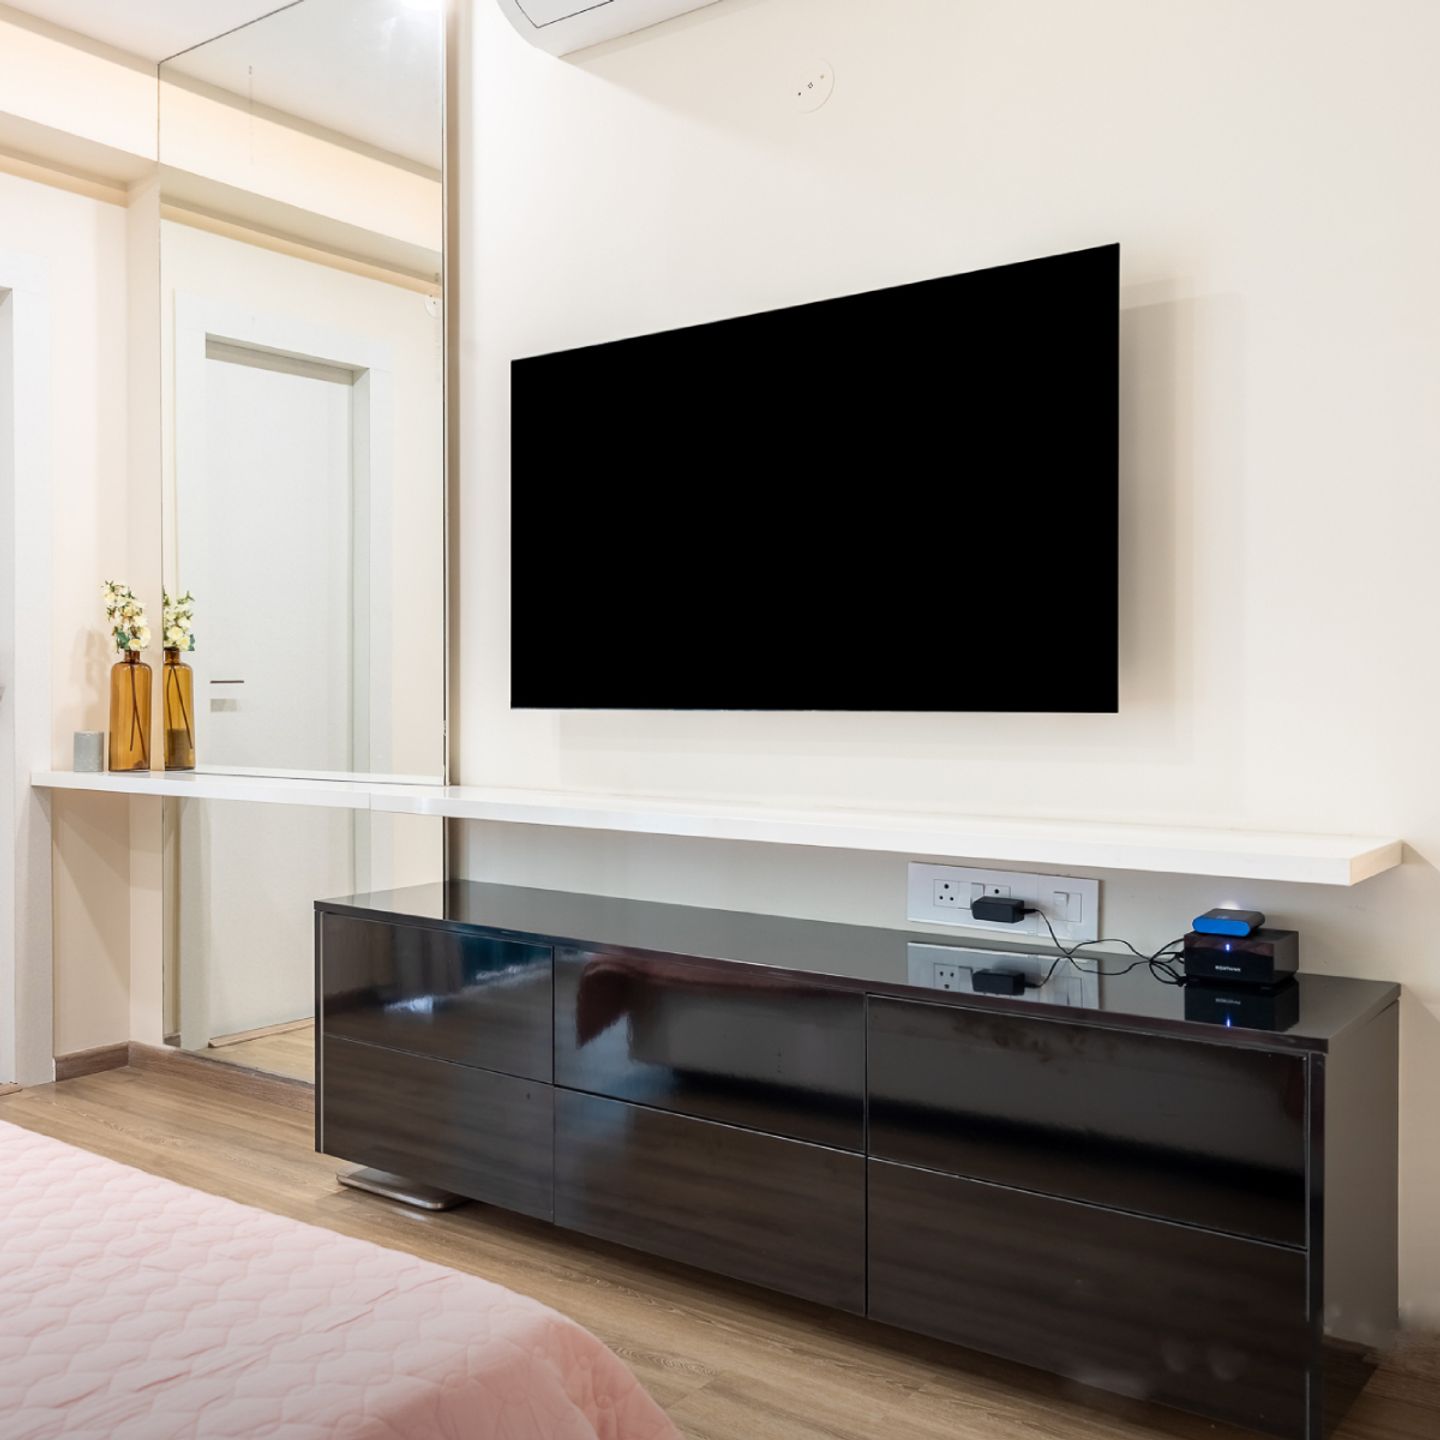 TV Unit Design With Minimal Interiors - Livspace